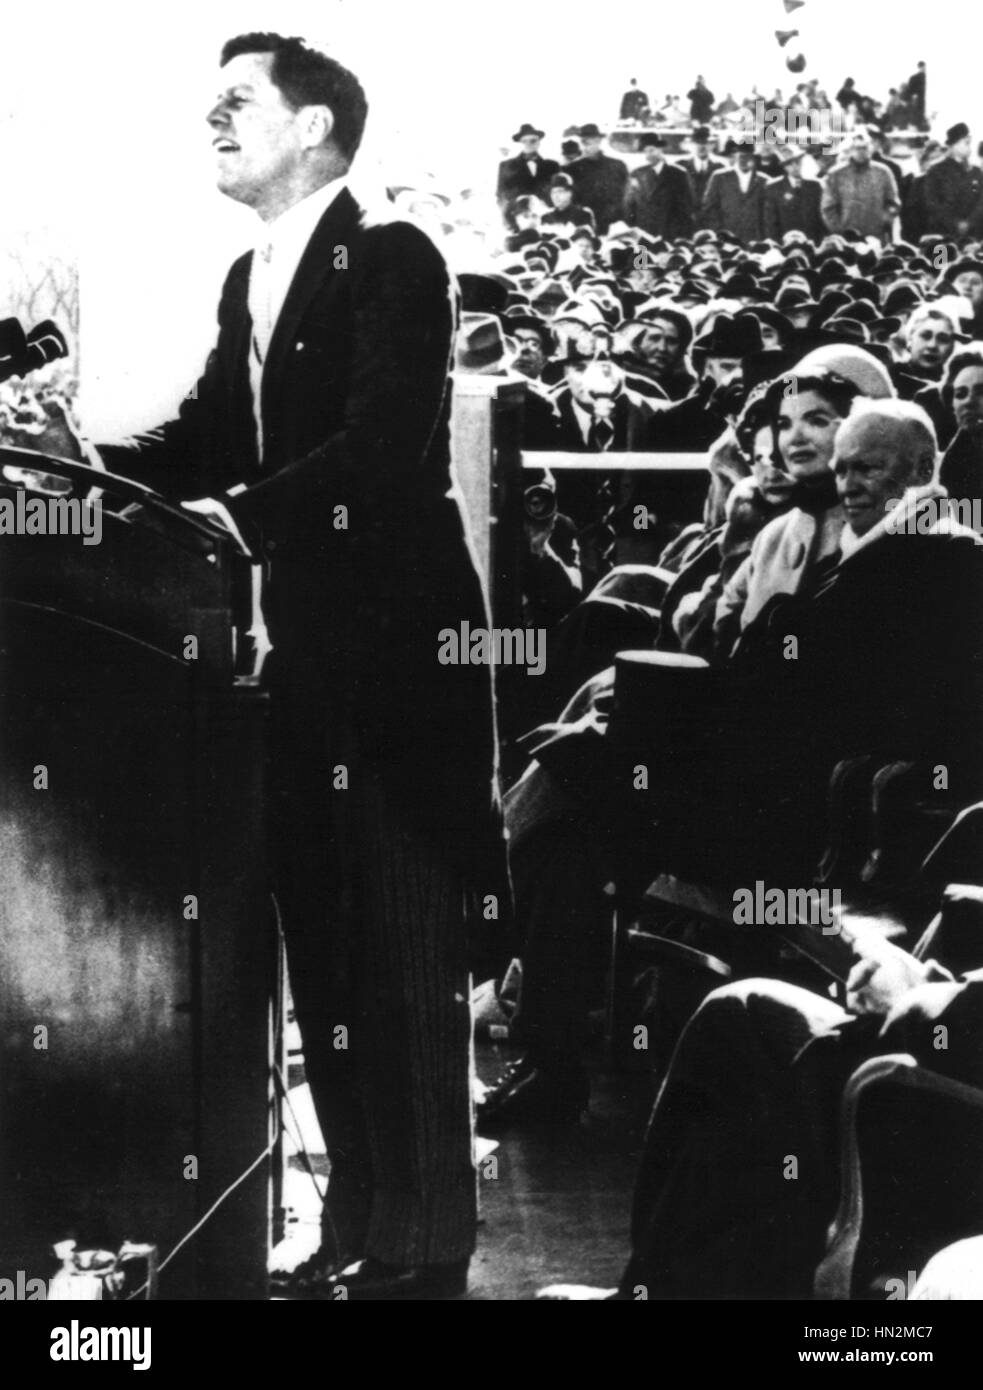 John Kennedy dans son discours inaugural (derrière lui, Jacqueline Kennedy et Eisenhower) Janvier 20, 1961 United States National archives. Washington Banque D'Images